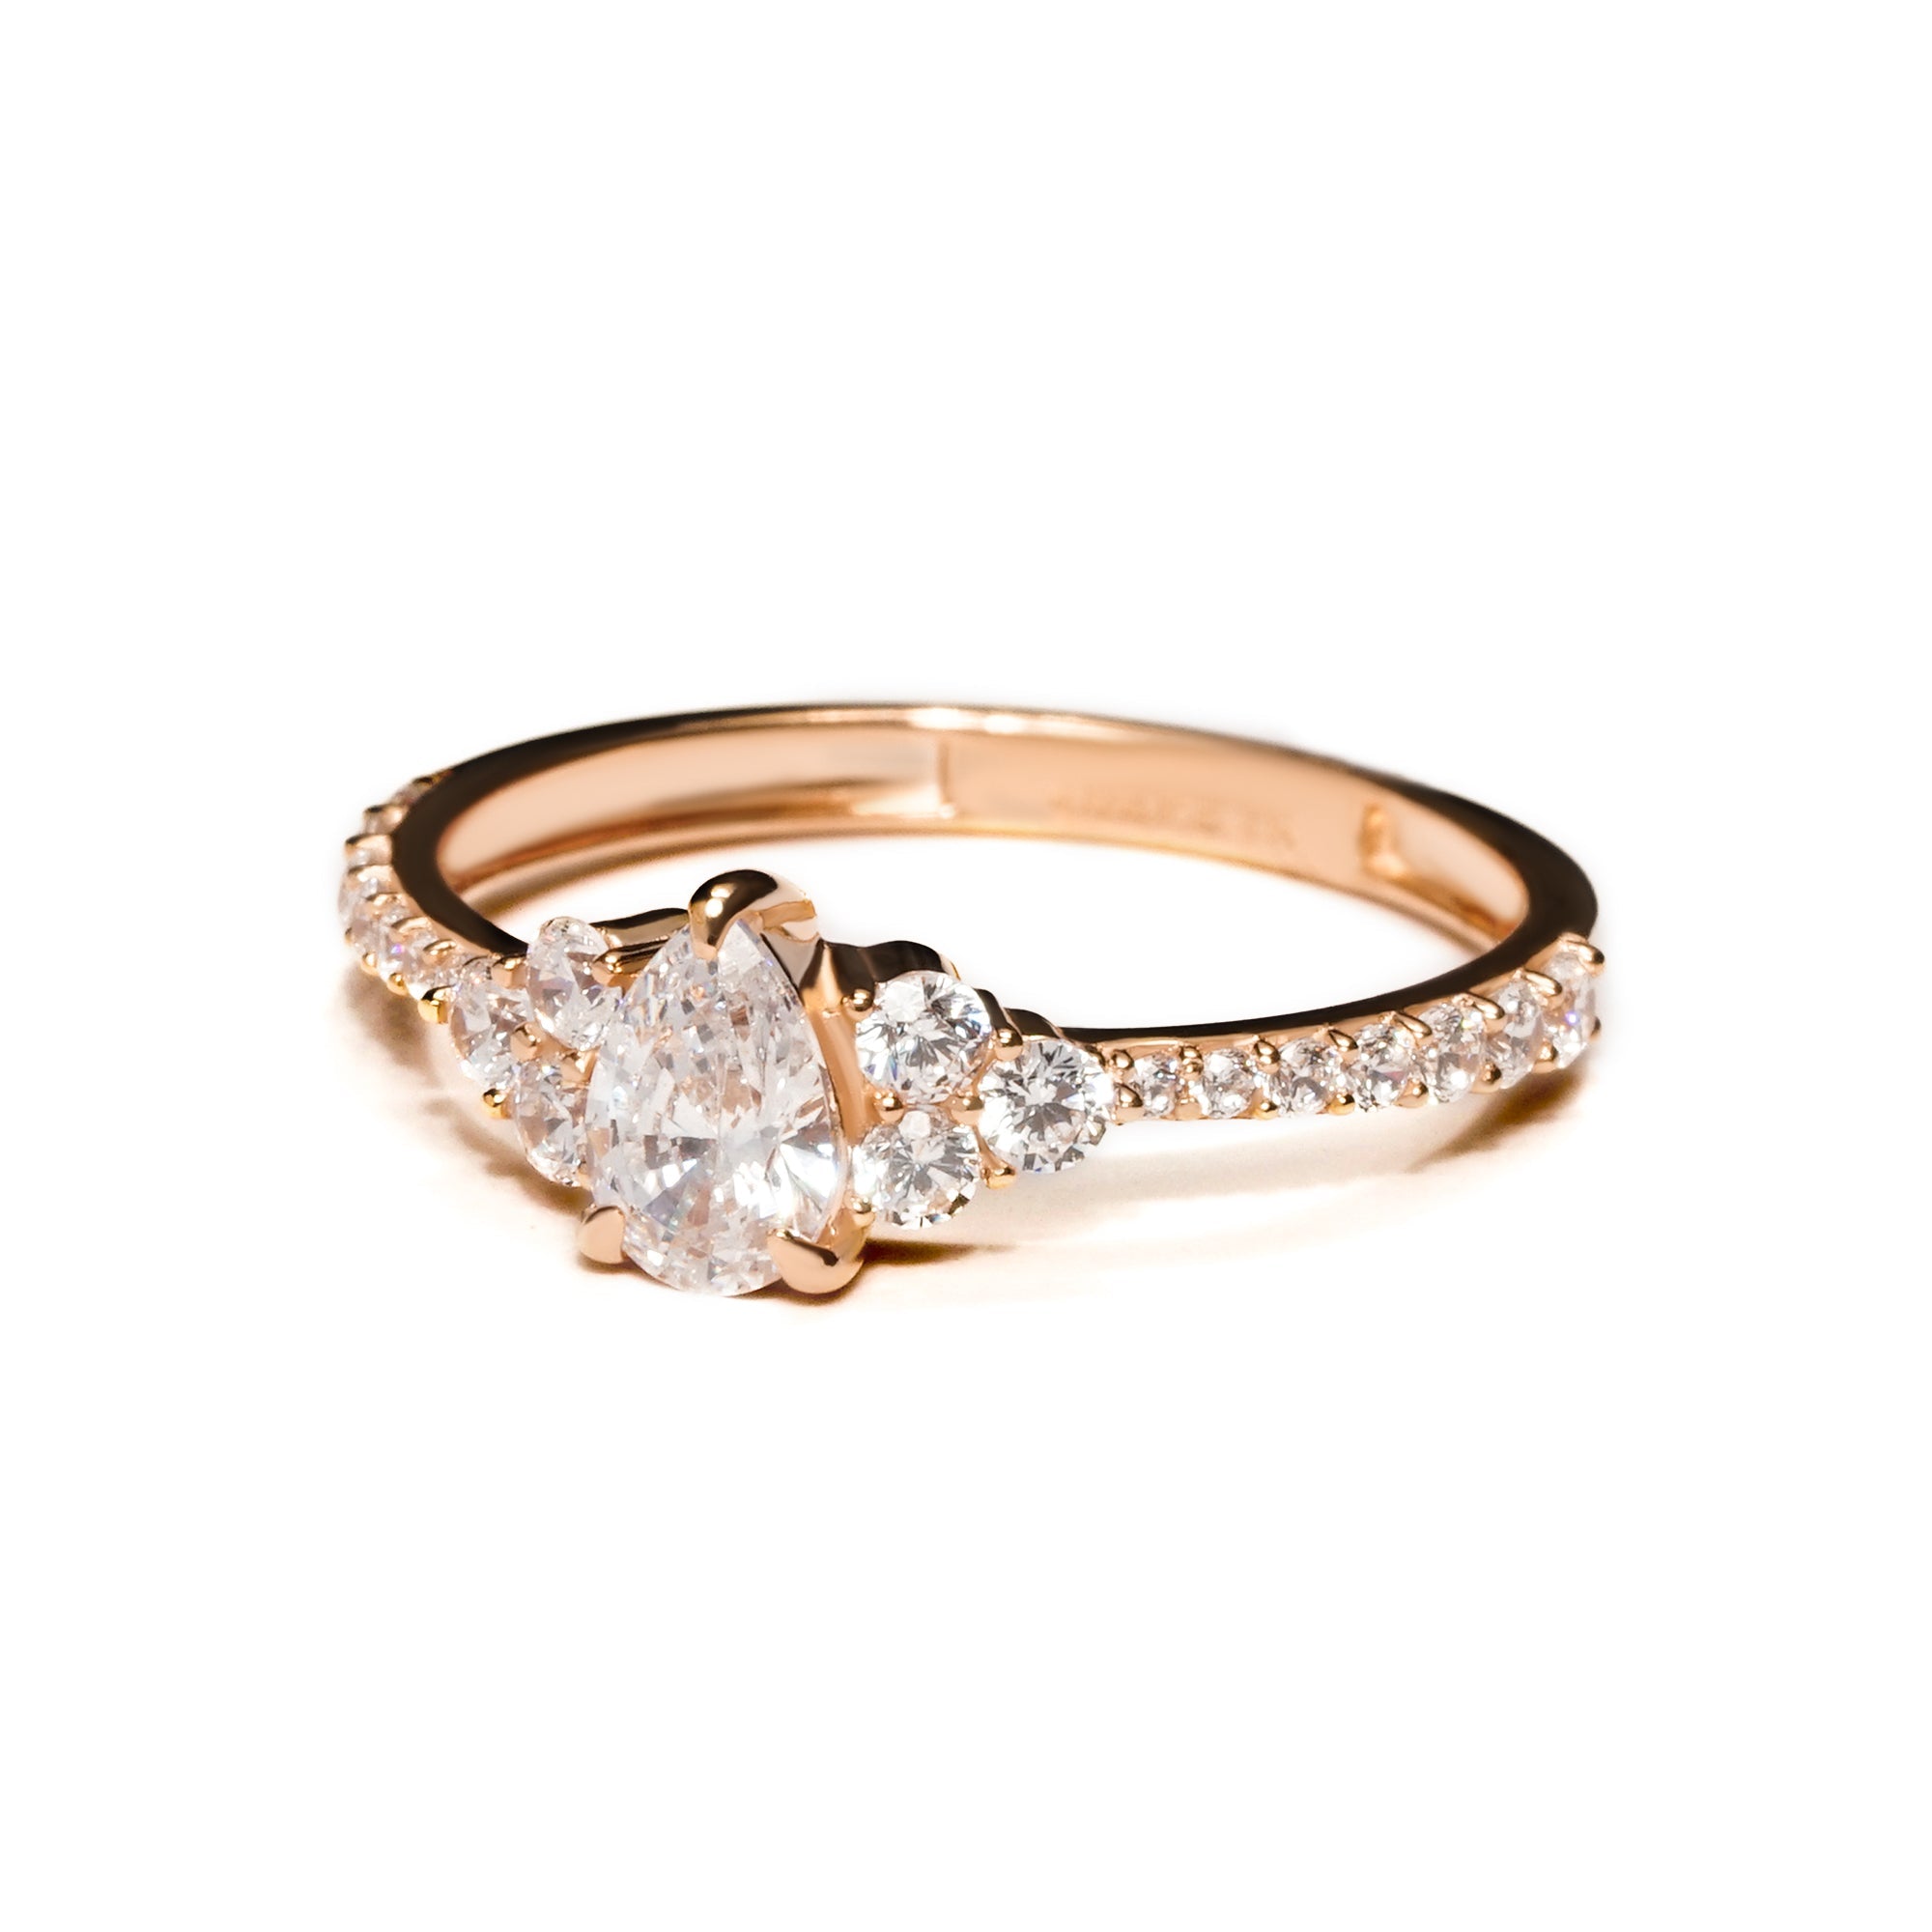 Daniya Gold Ring - Serene Collection - Juene